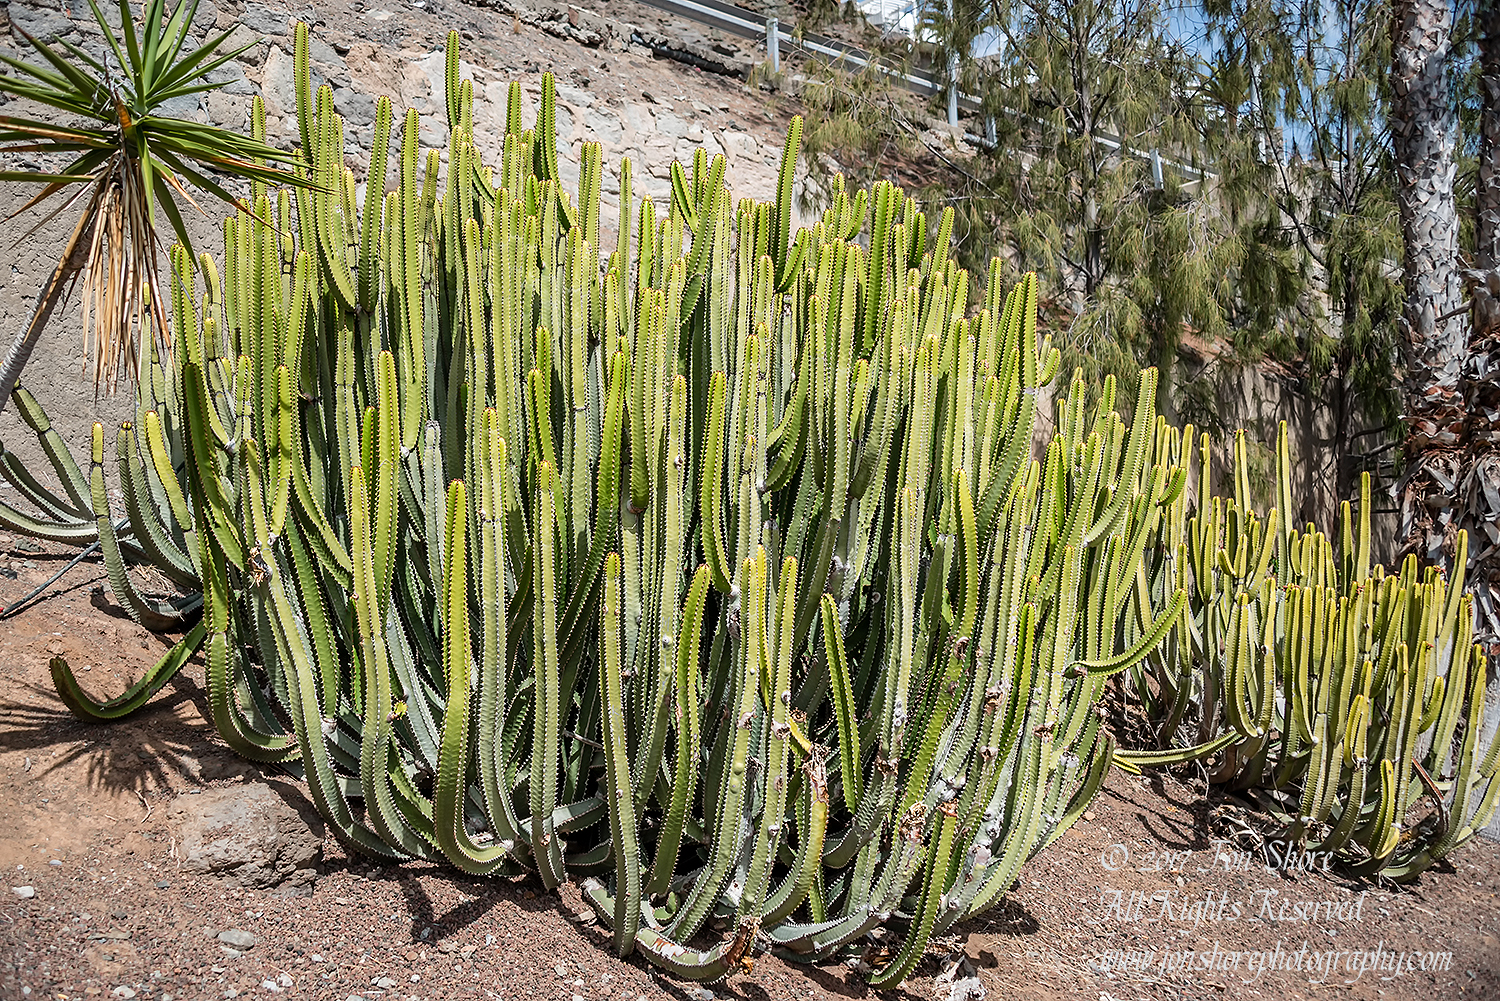 Cactus. Playa de Amadores, Gran Canaria. Nikkor 100mm